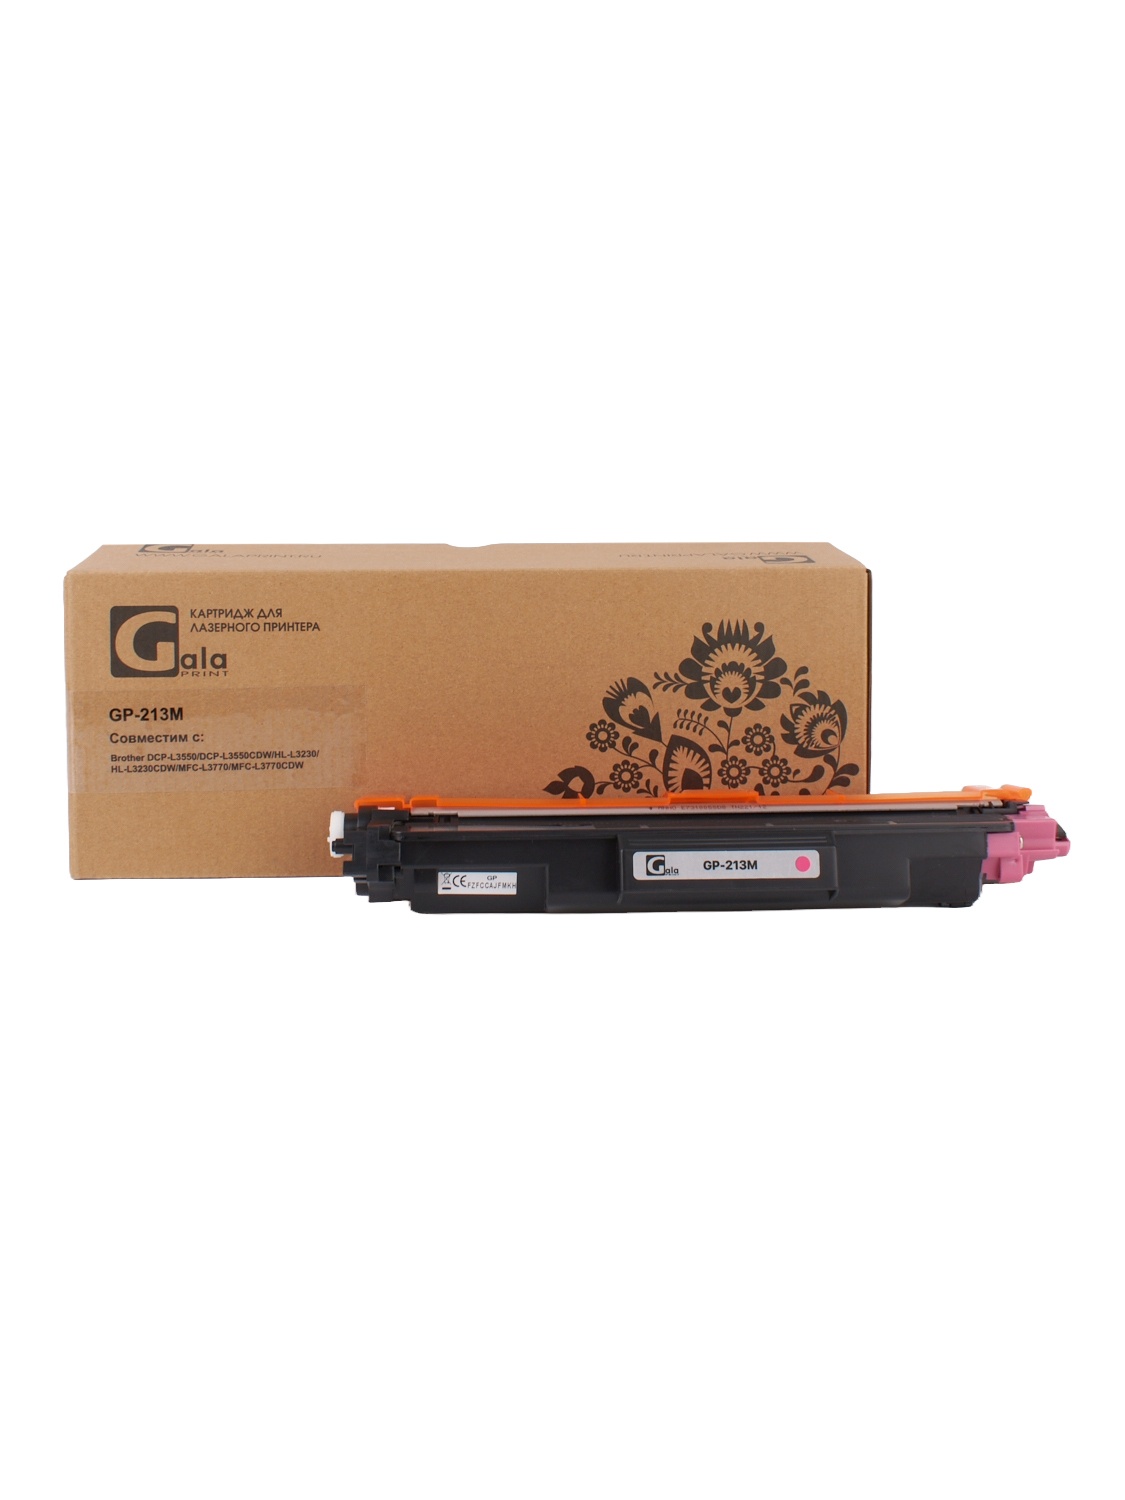 Картридж GP-TN-213M для принтеров Brother DCP-L3550/DCP-L3550CDW/HL-L3230/HL-L3230CDW/MFC-L3770/MFC-L3770CDW Magenta 1300 копий GalaPrint